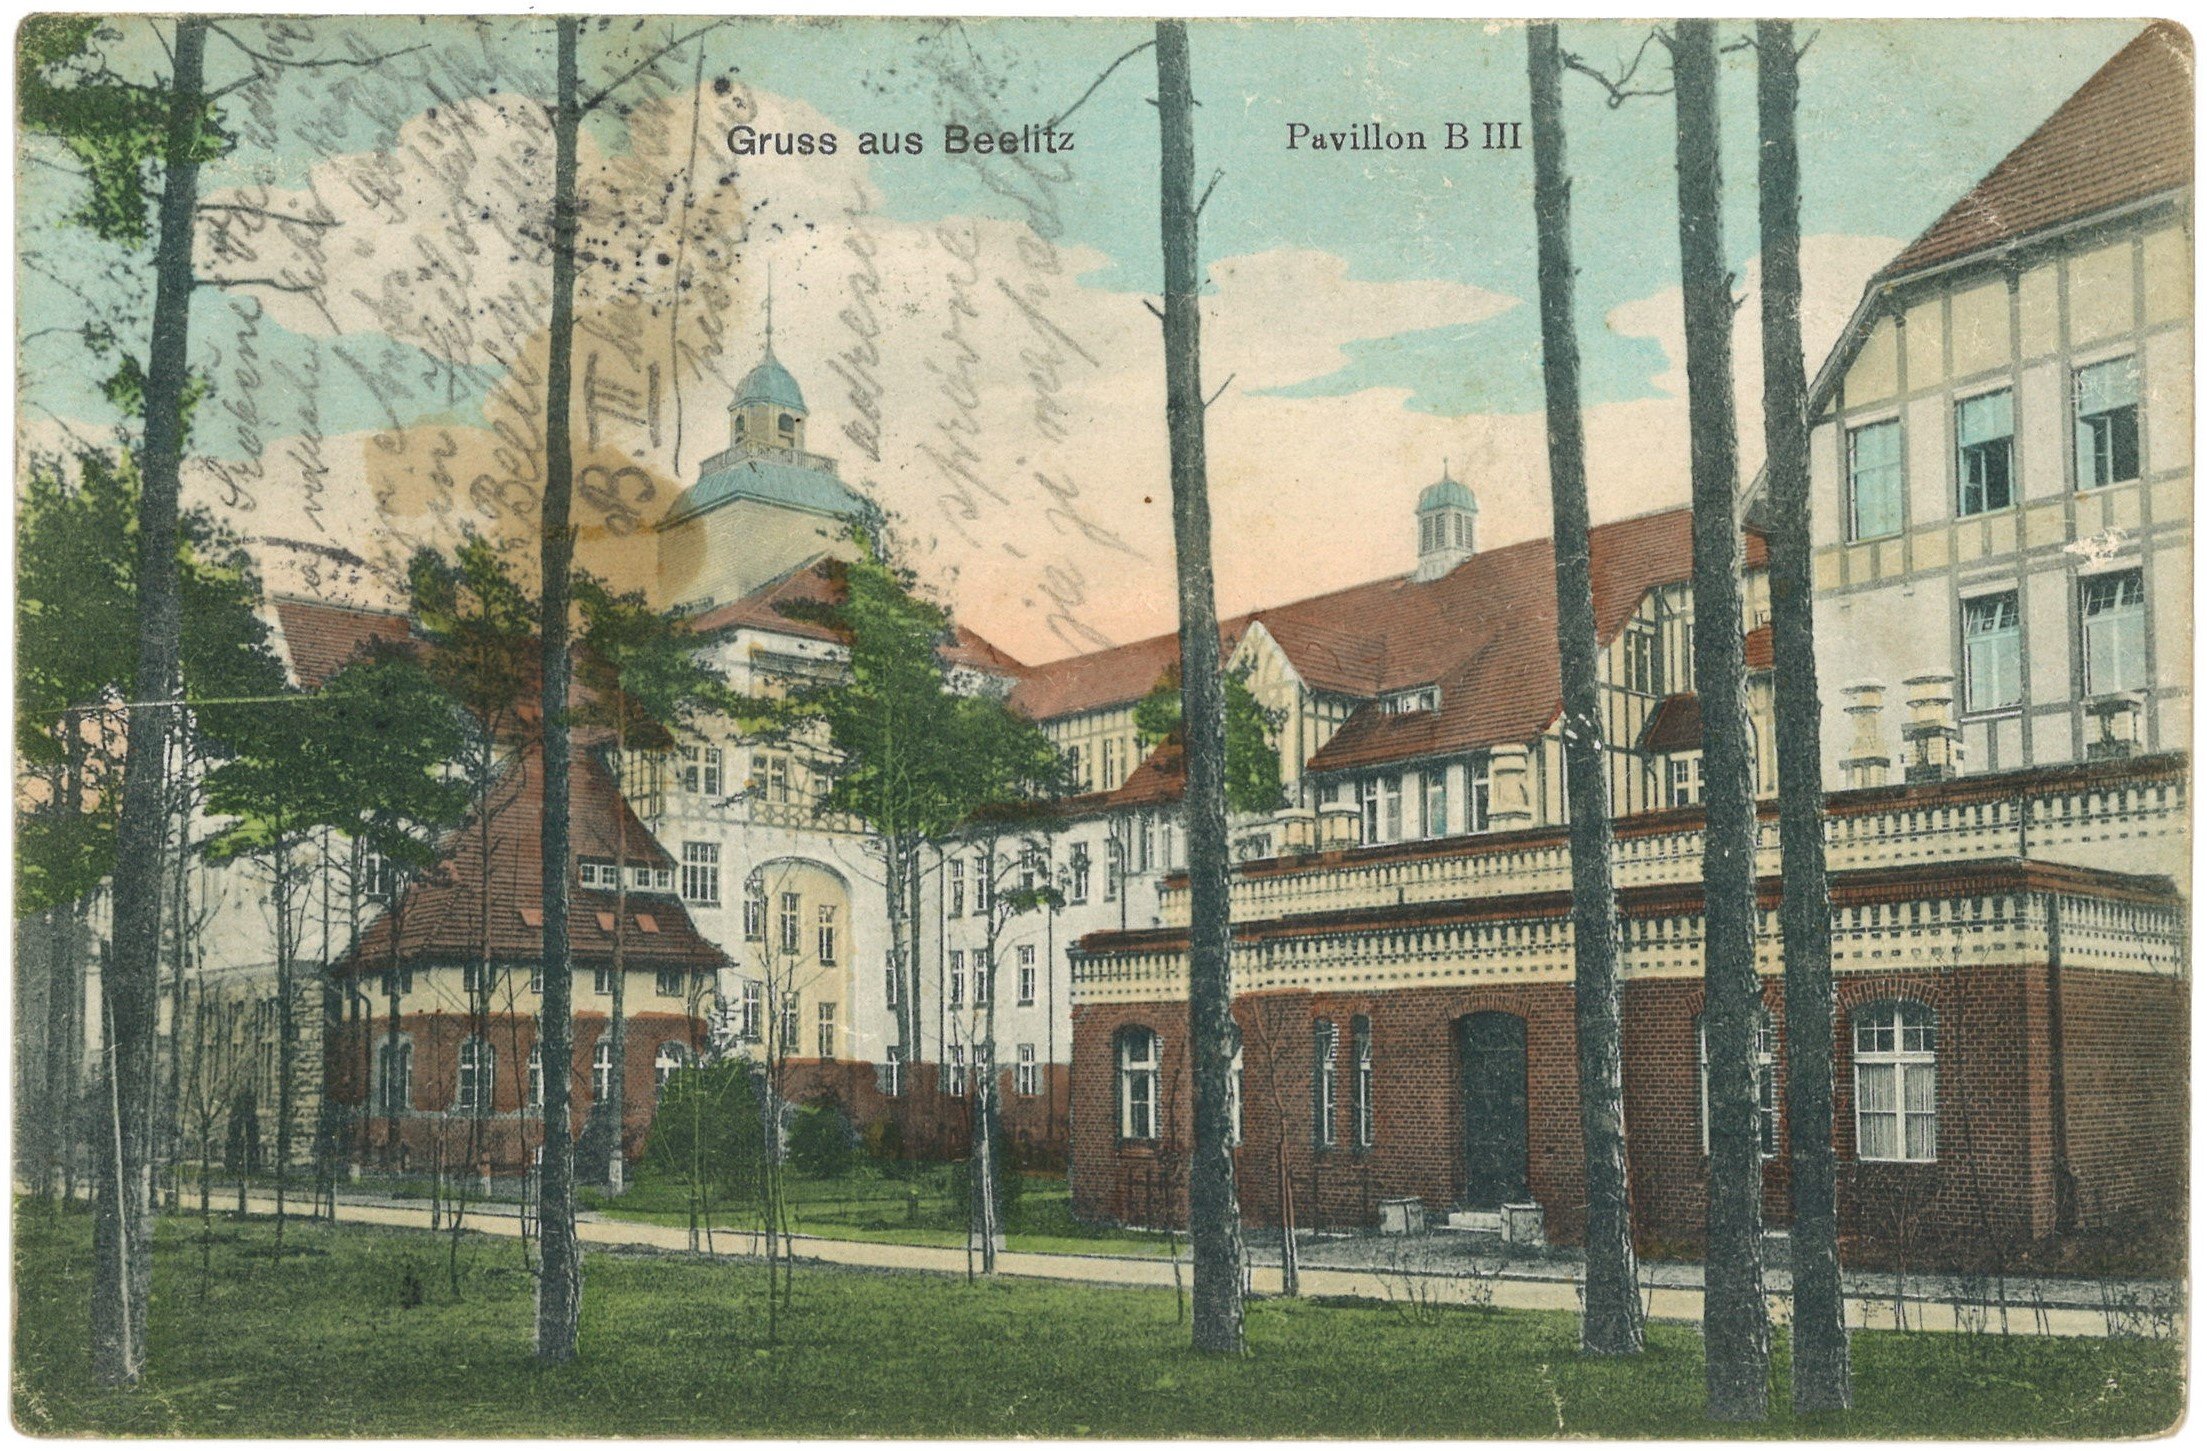 Beelitz-Heilstätten: Pavillon B III (Landesgeschichtliche Vereinigung für die Mark Brandenburg e.V. CC BY)